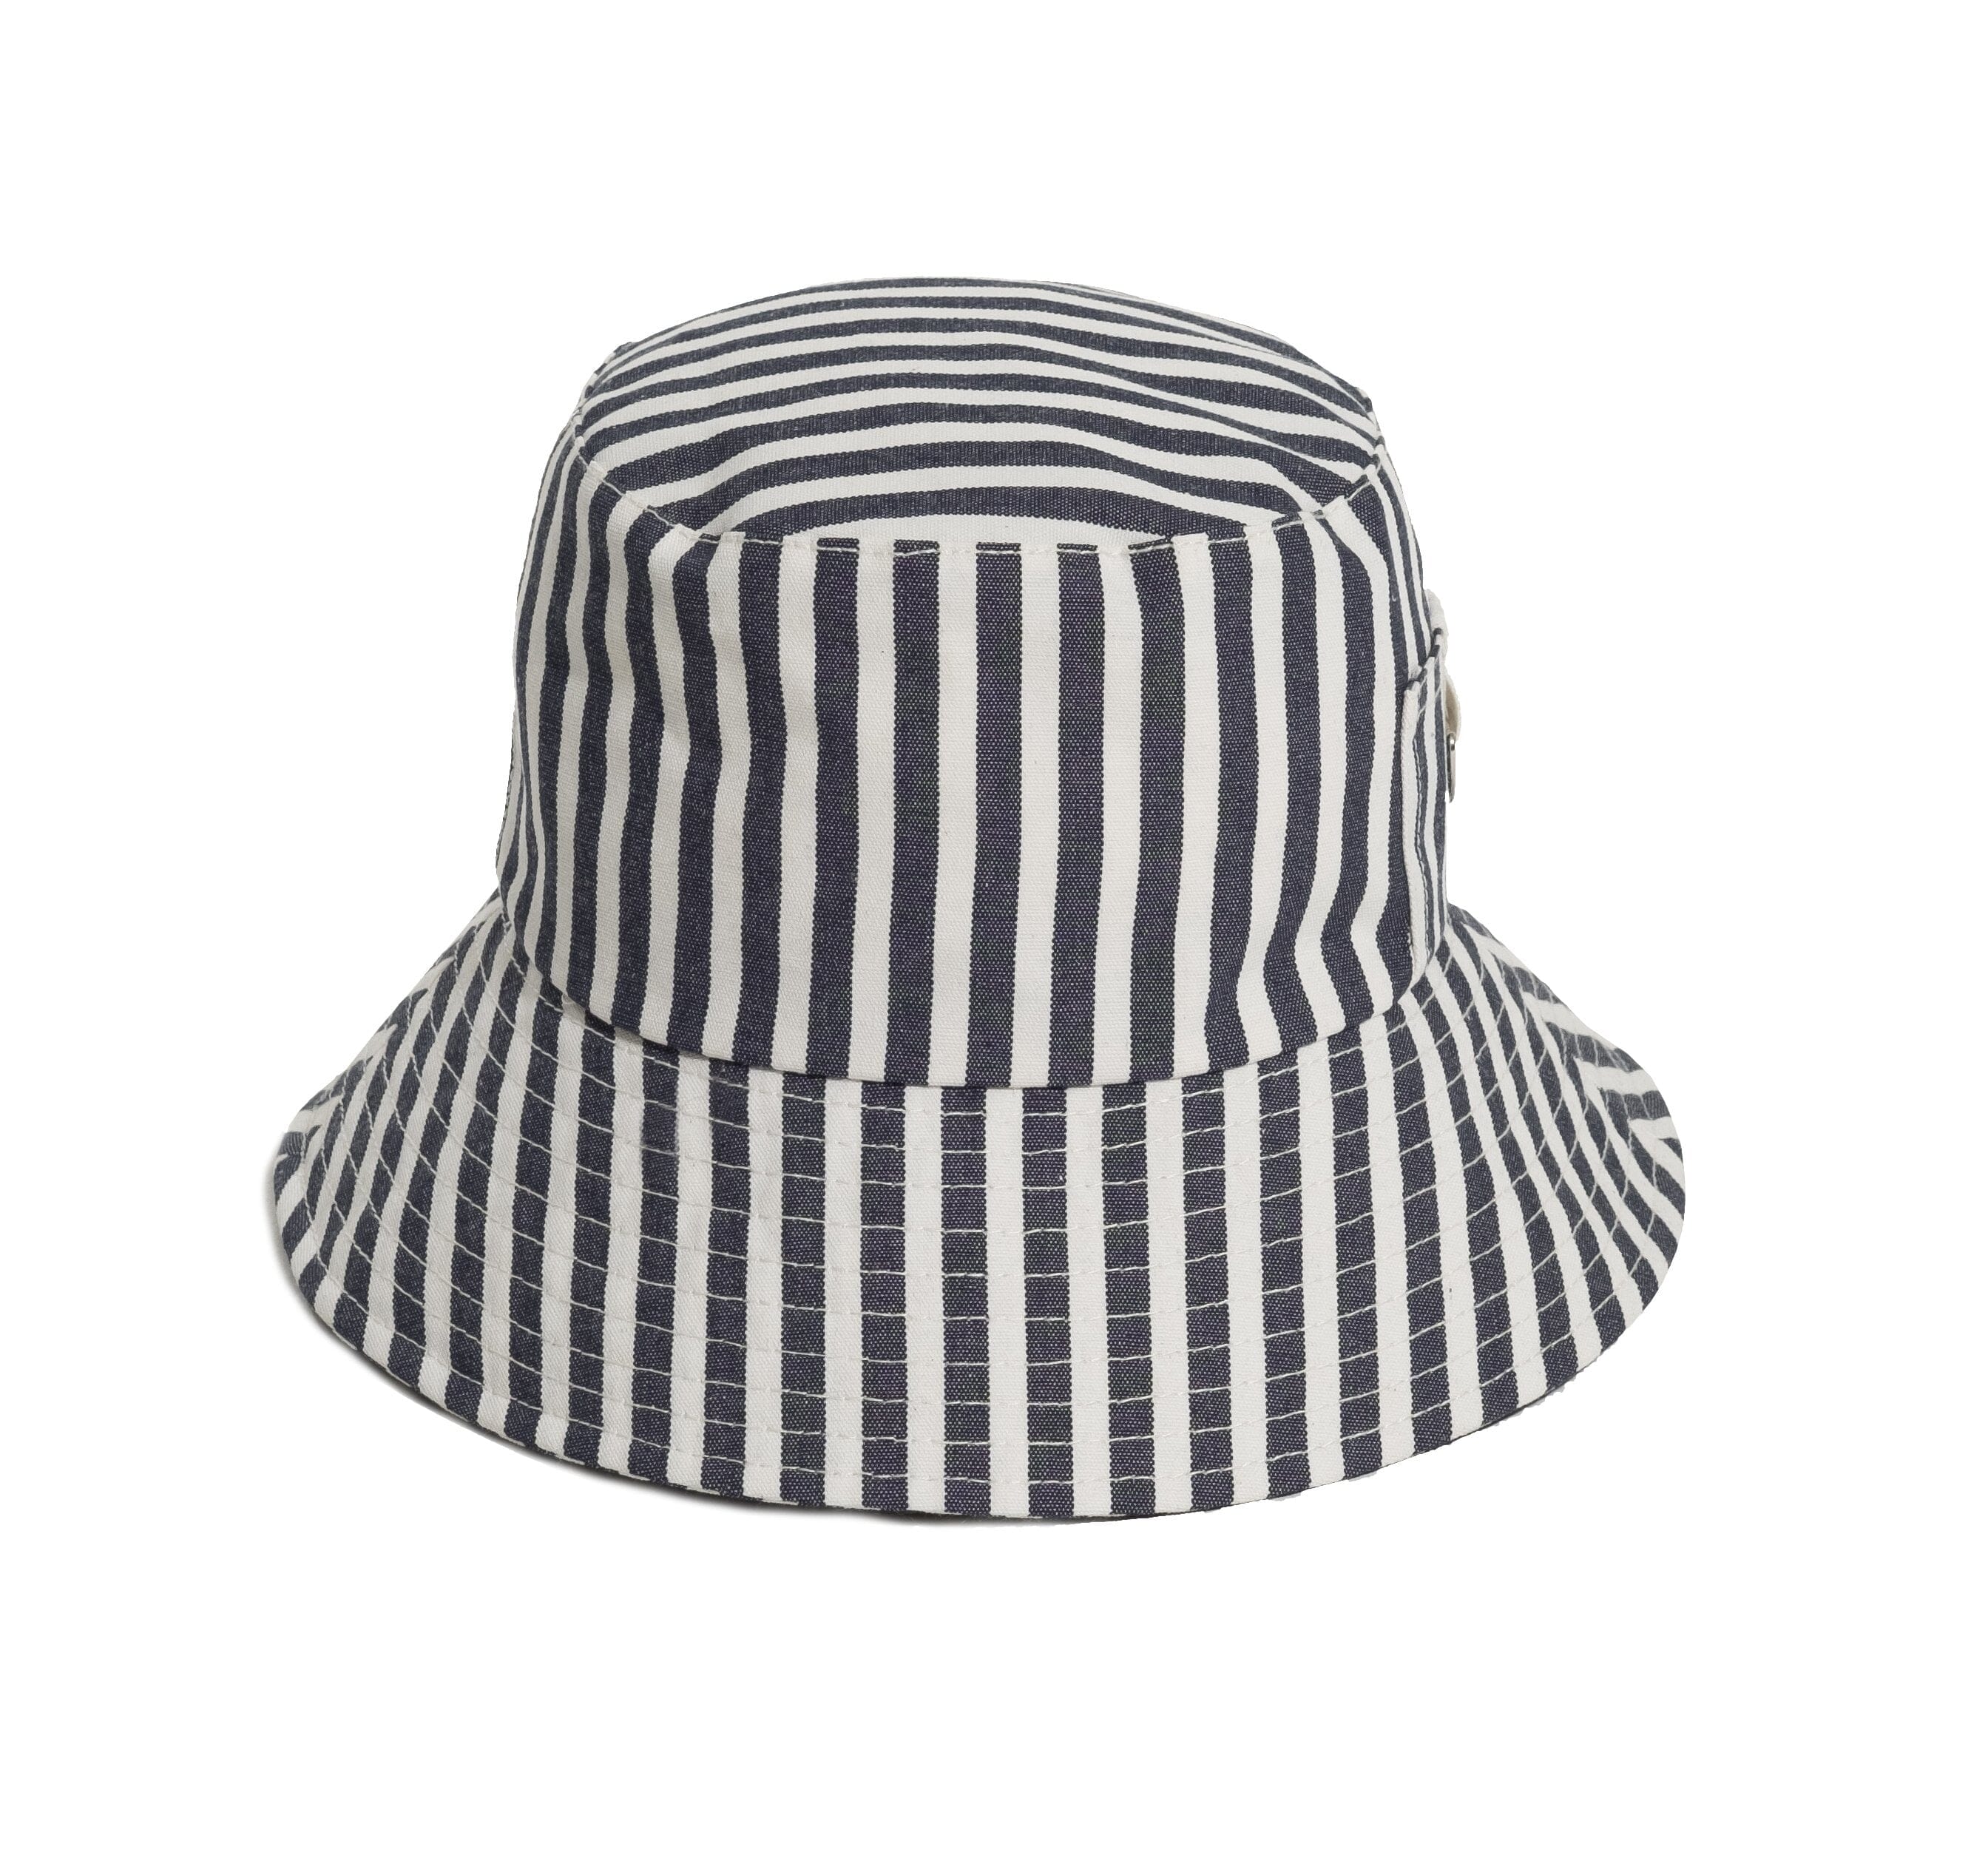 The Bucket Hat - Lauren's Navy Stripe Bucket Hat Business & Pleasure Co 